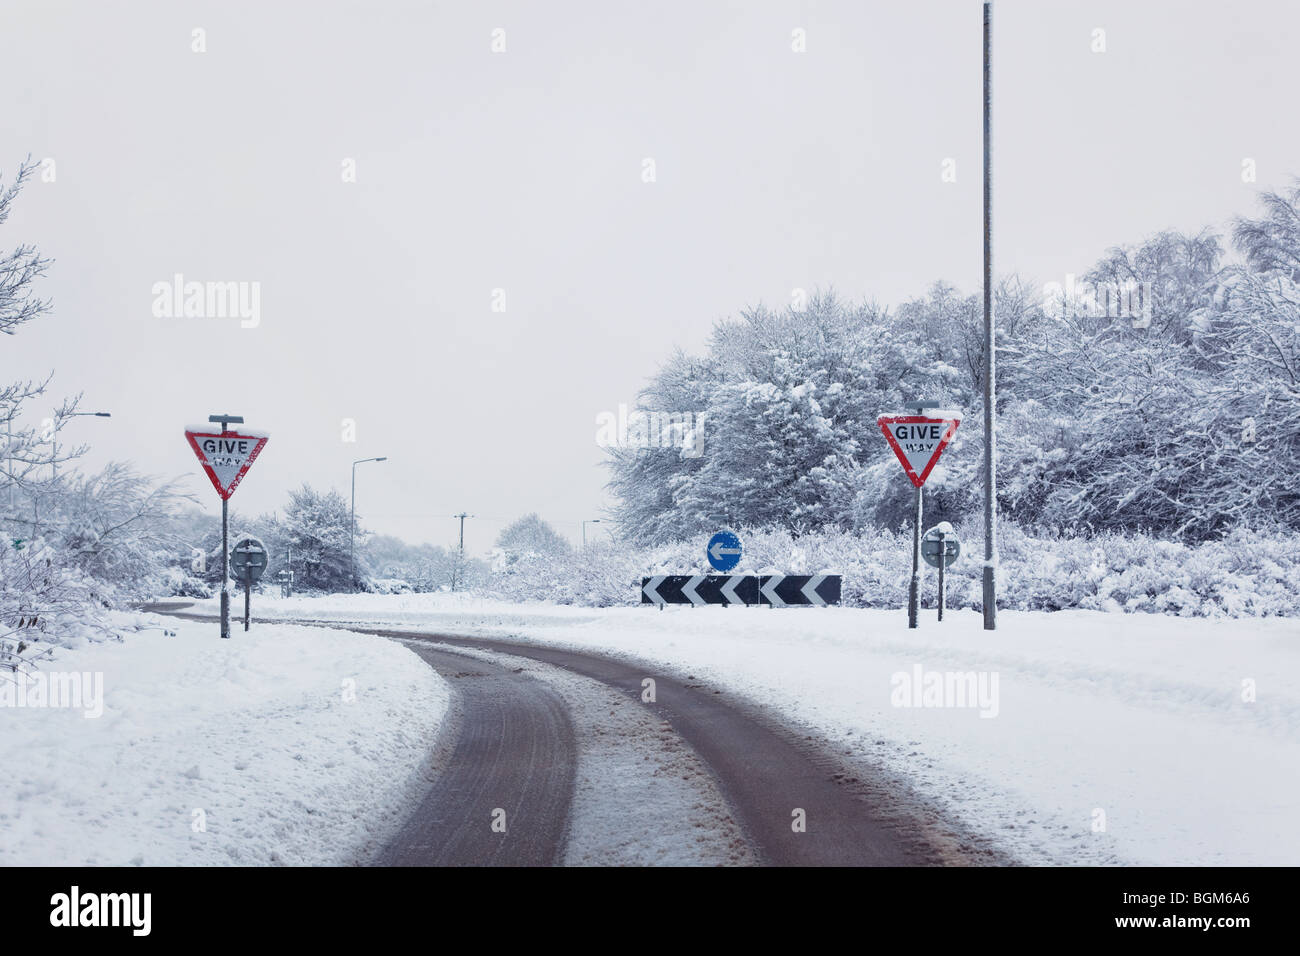 Foto de un camino en el enfoque a una rotonda después de una caída de nieve pesada, dar señales Foto de stock